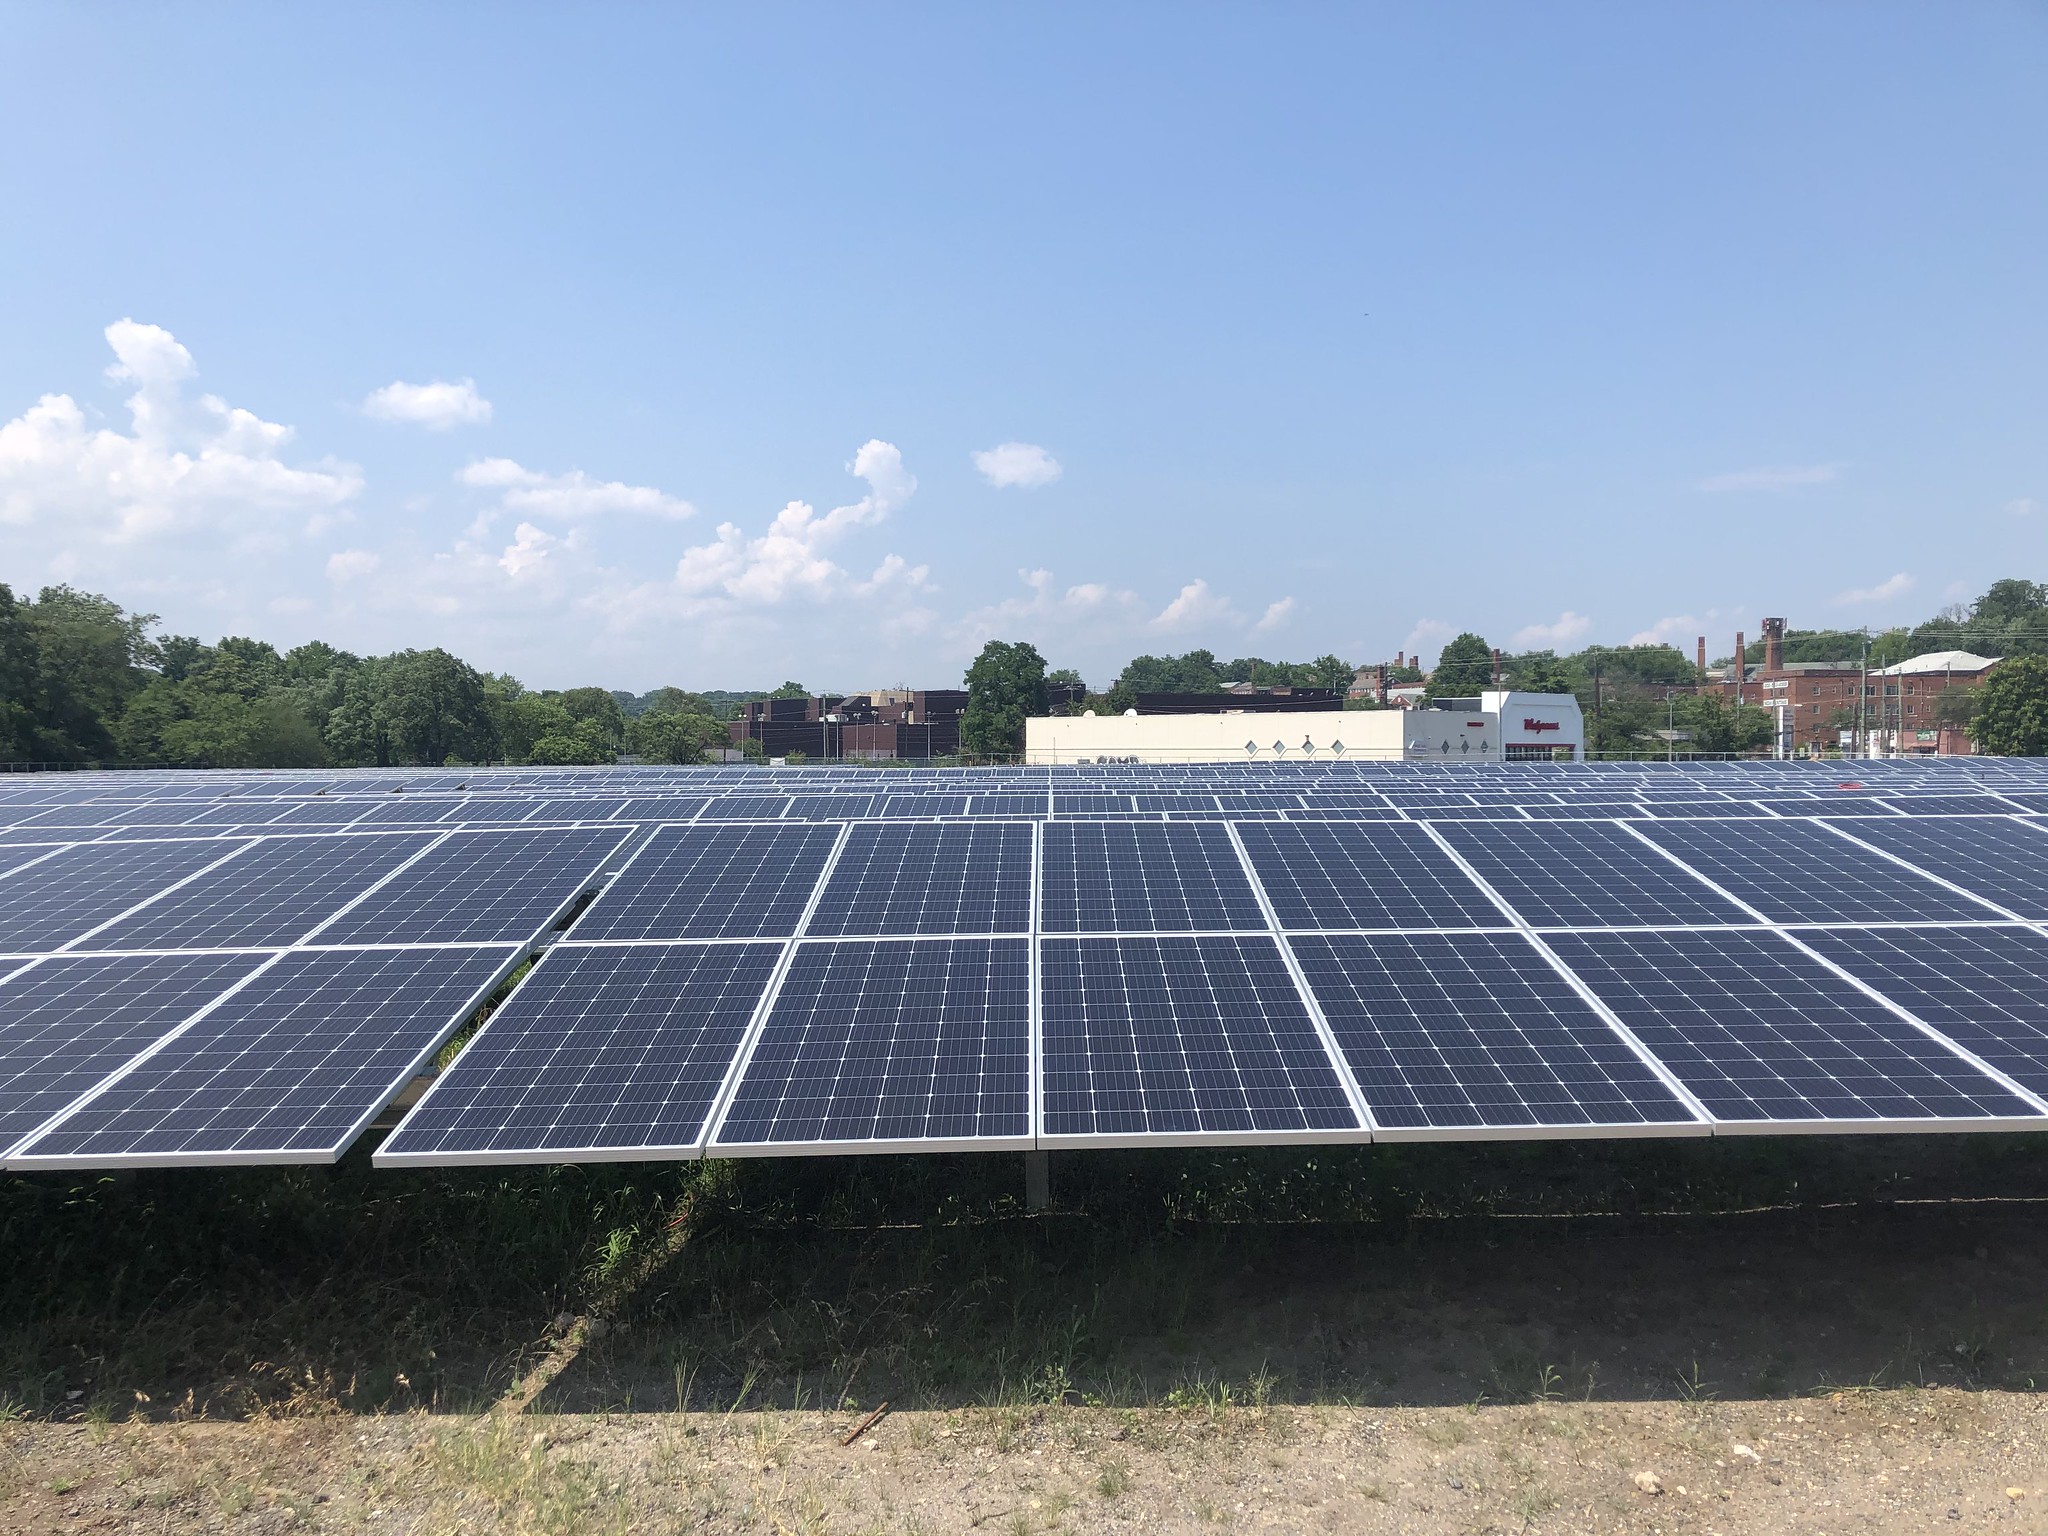 A row of solar panels outside.